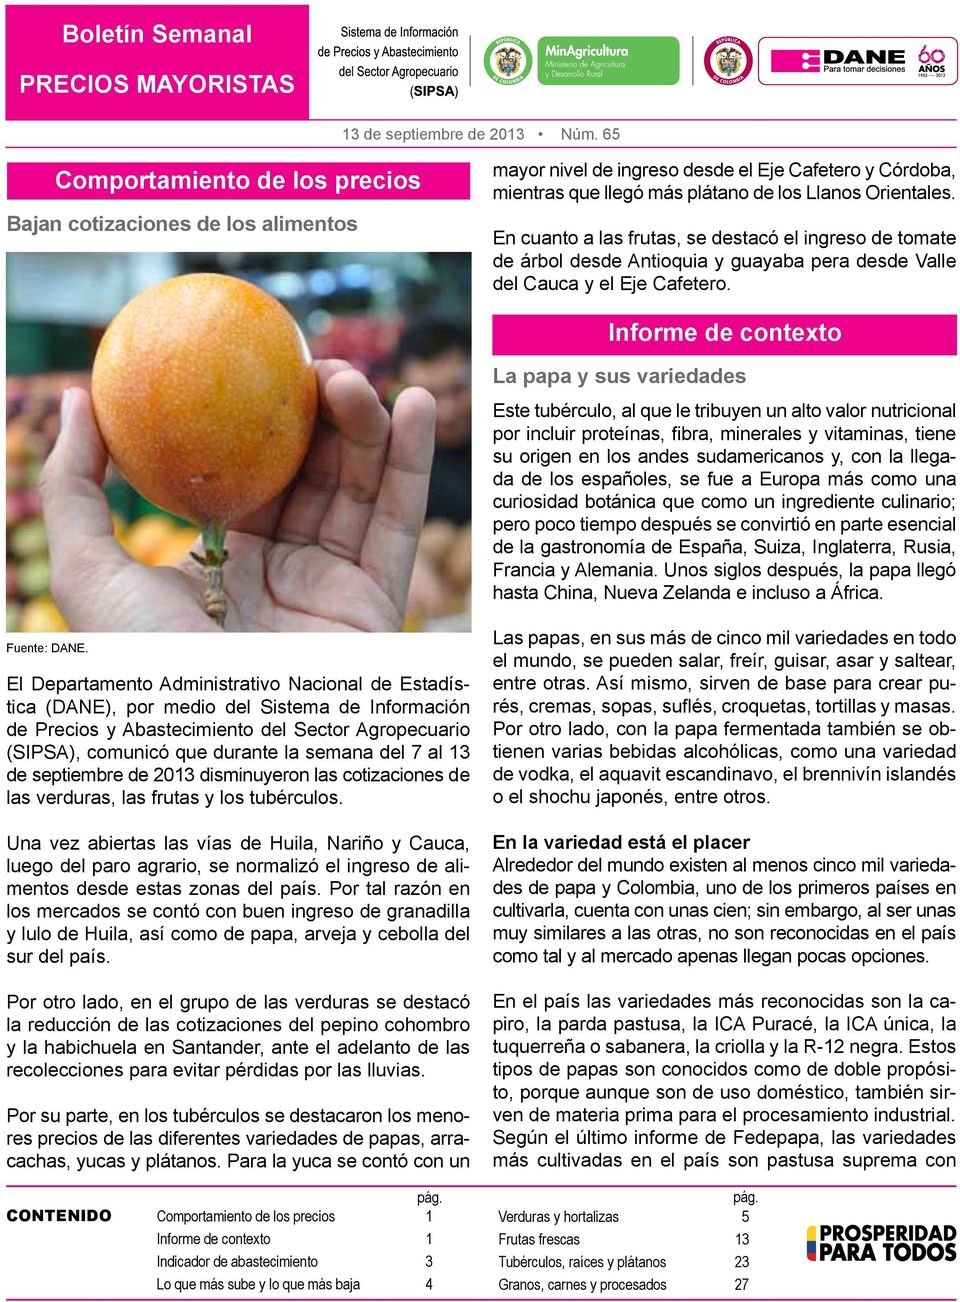 En cuanto a las frutas, se destacó el ingreso de tomate de árbol desde Antioquia y guayaba pera desde Valle del Cauca y el Eje Cafetero.